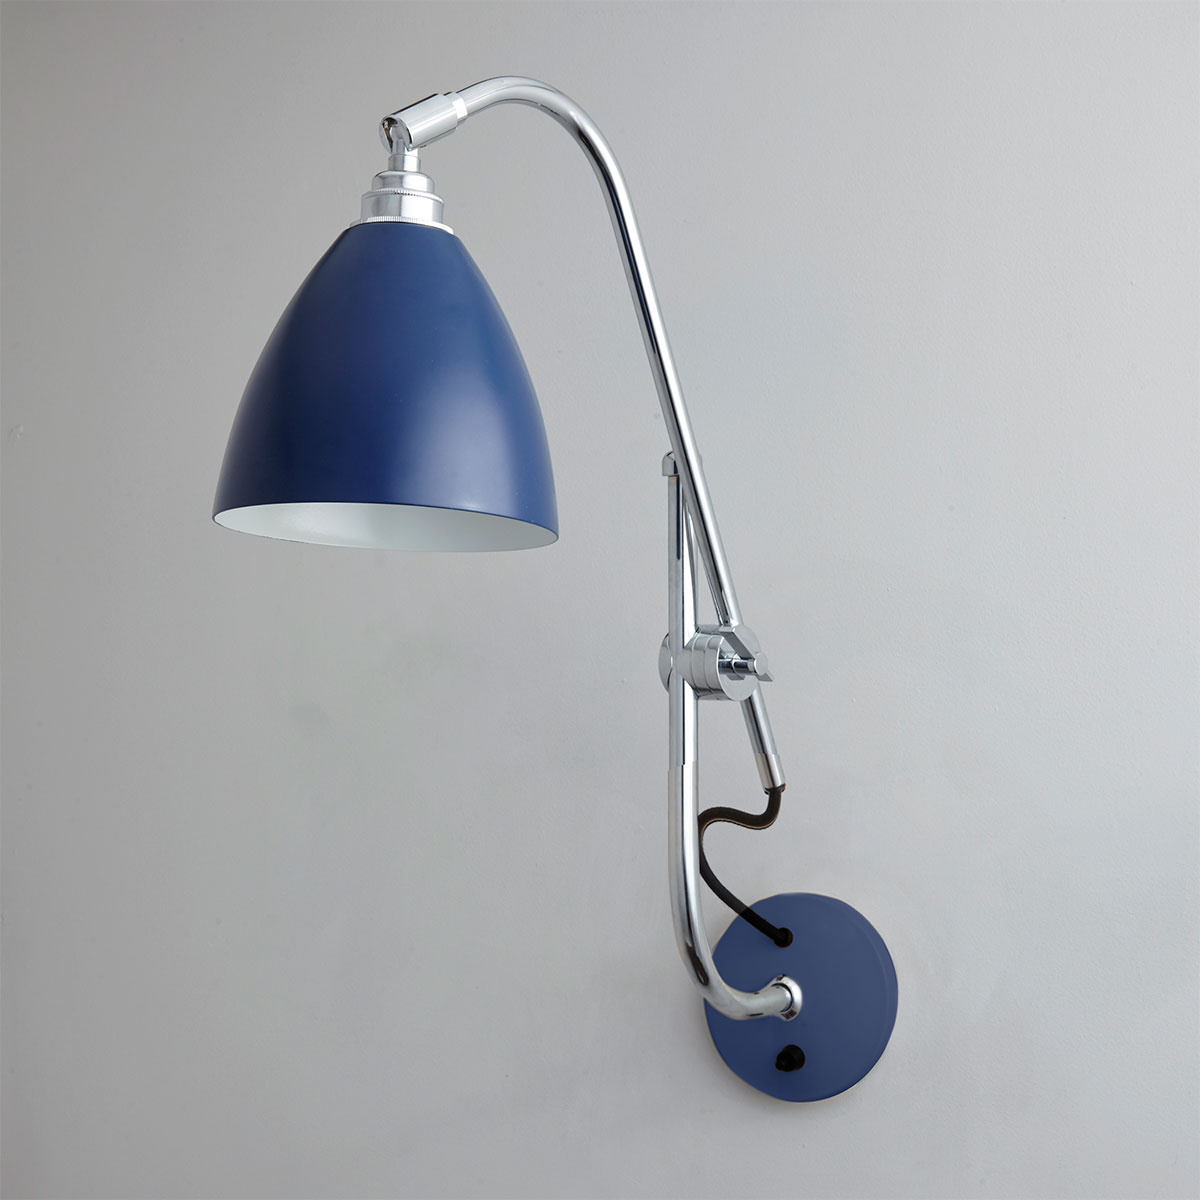 Wandlampe Leuchte Bauhaus Industriedesign Kugelglas Wandarm Messing vernickelt 